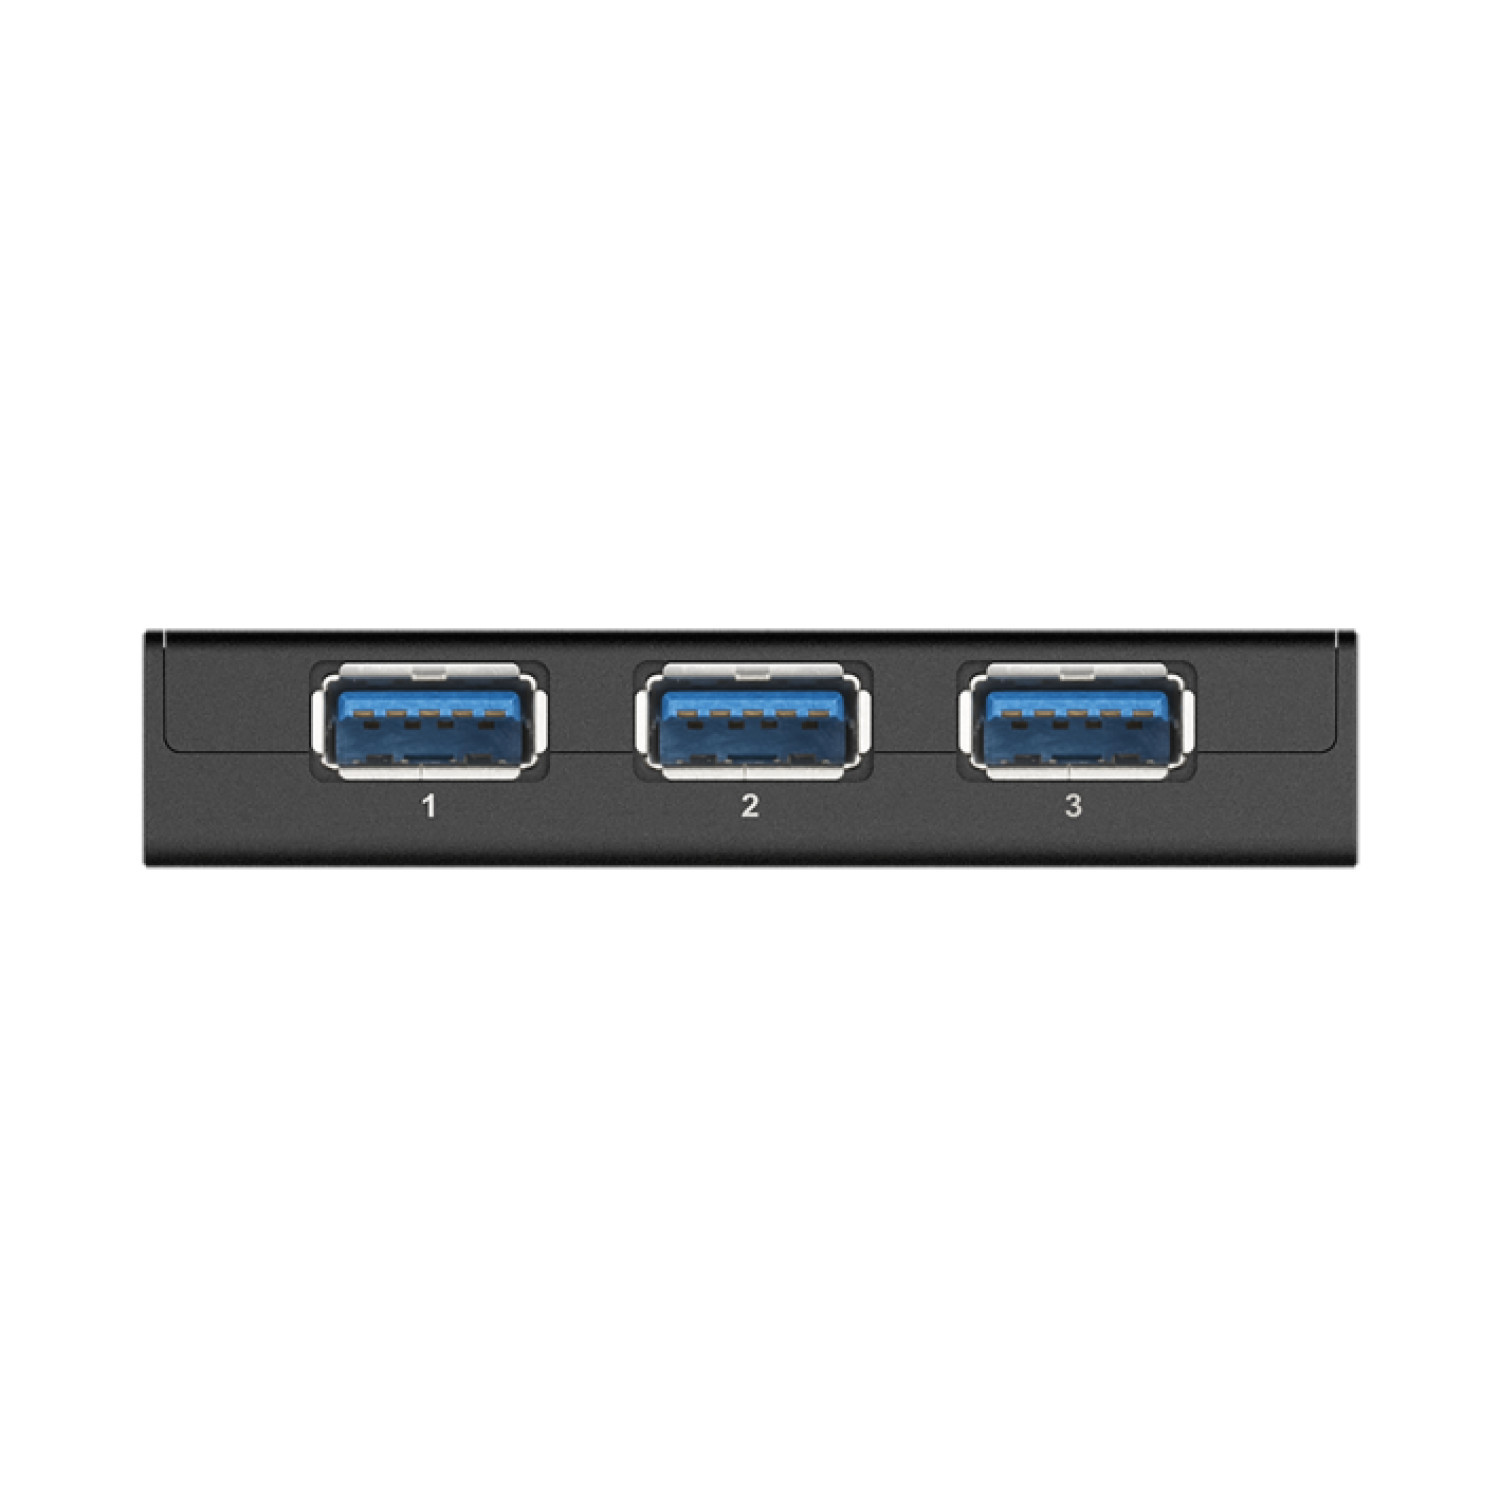 USB хъб D-Link DUB-1340/E със захранване, USB 3.0, Черен